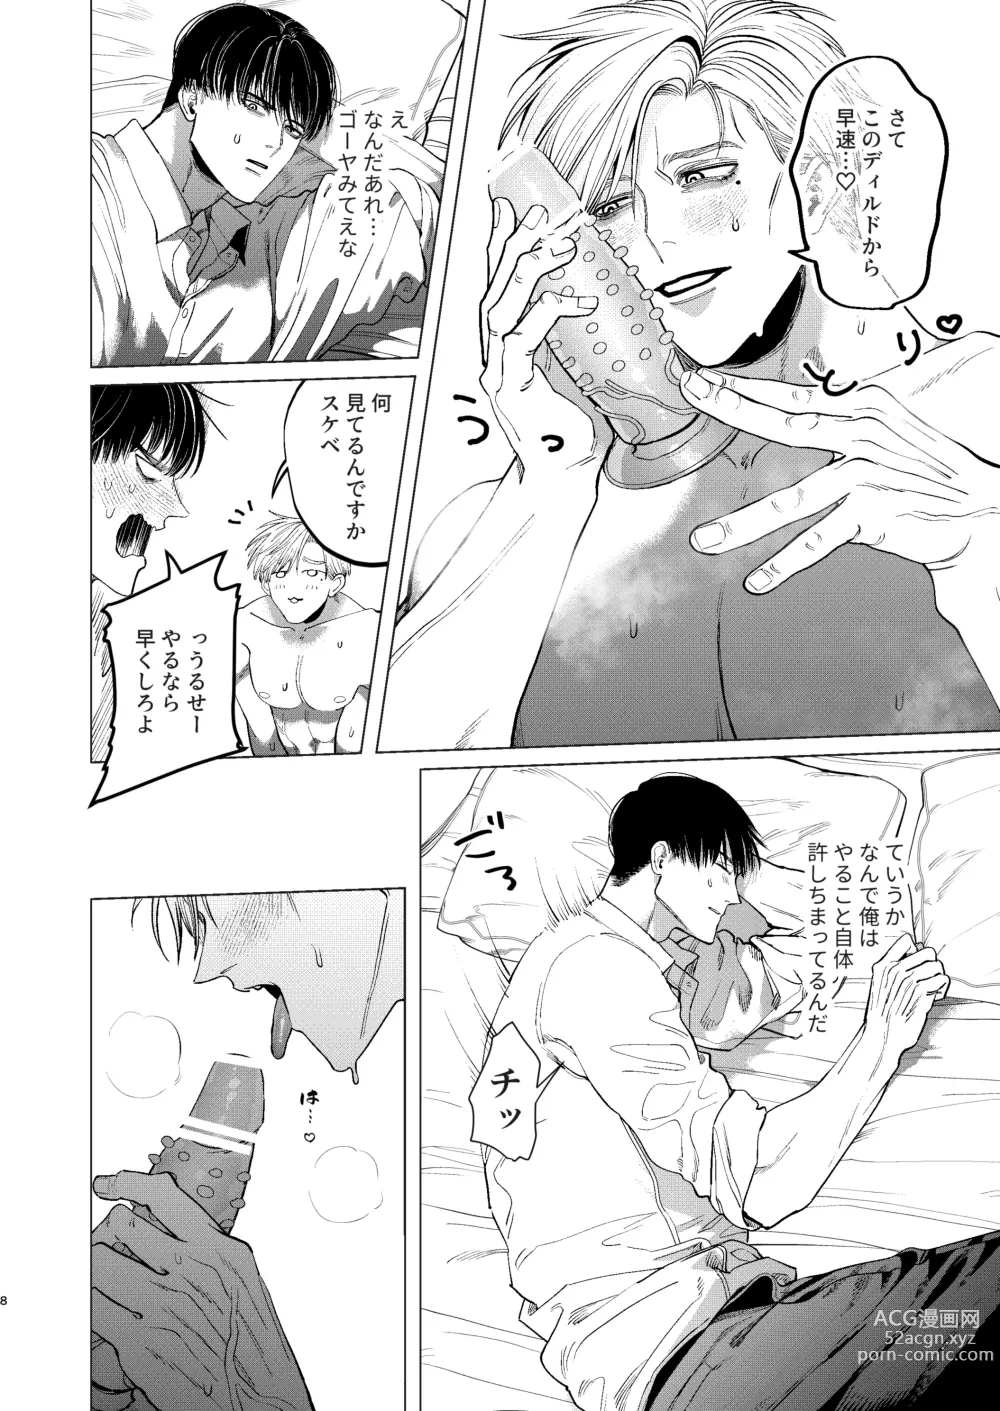 Page 7 of doujinshi Ore o Mamoru no wa Kinpatsu Gachimuchi Inran SP?!